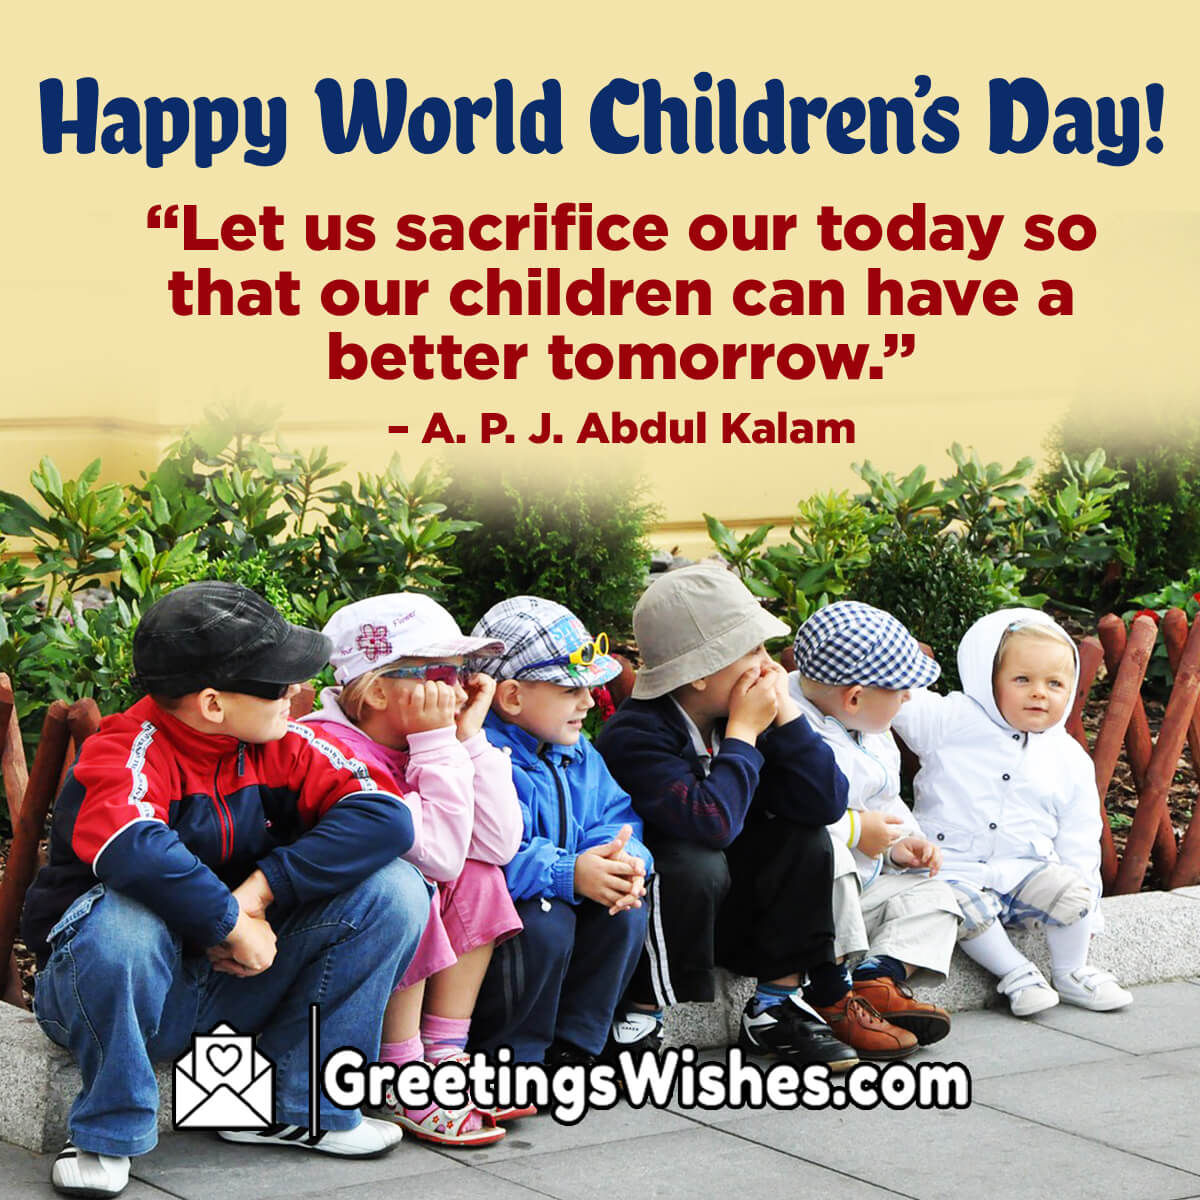 Happy World Children’s Day Message